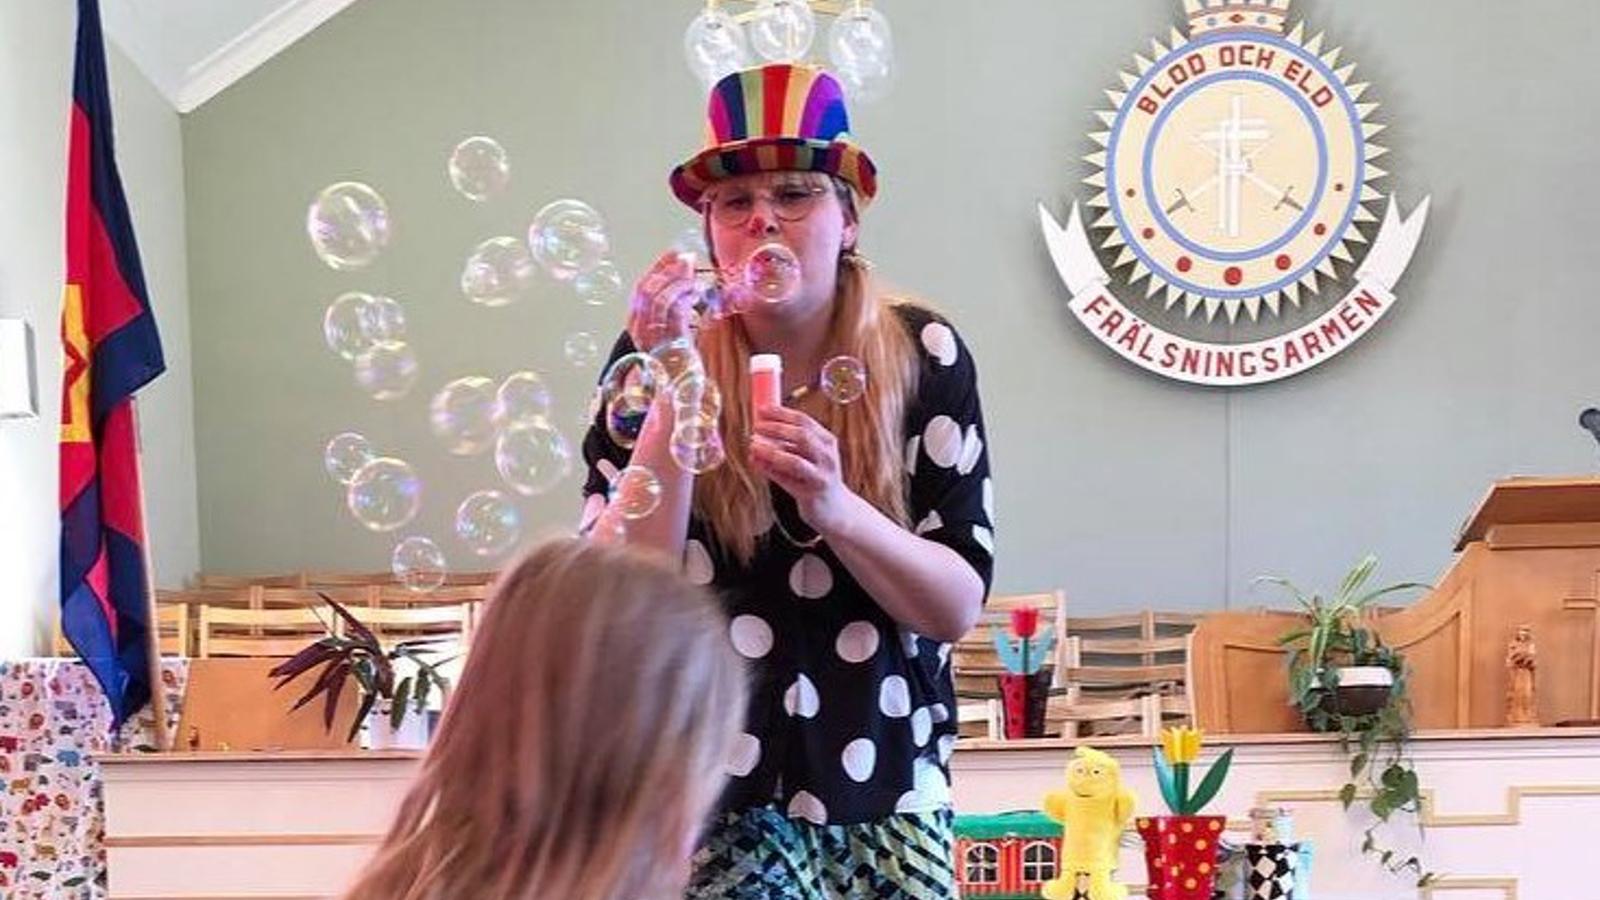 Clown blåser bubblor på barn